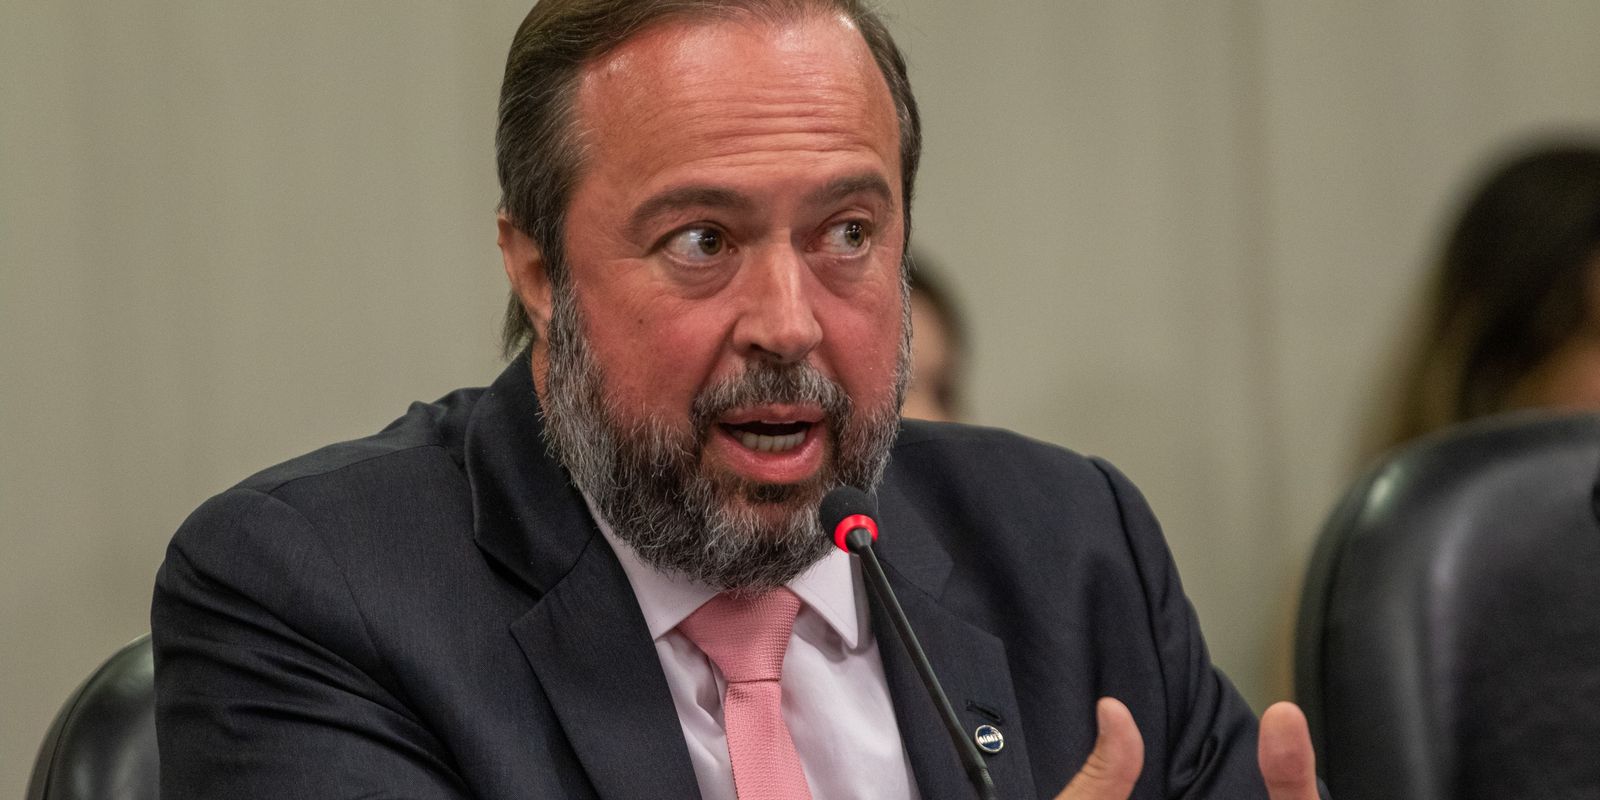 Governo vai propor nova política de preços para a Petrobras